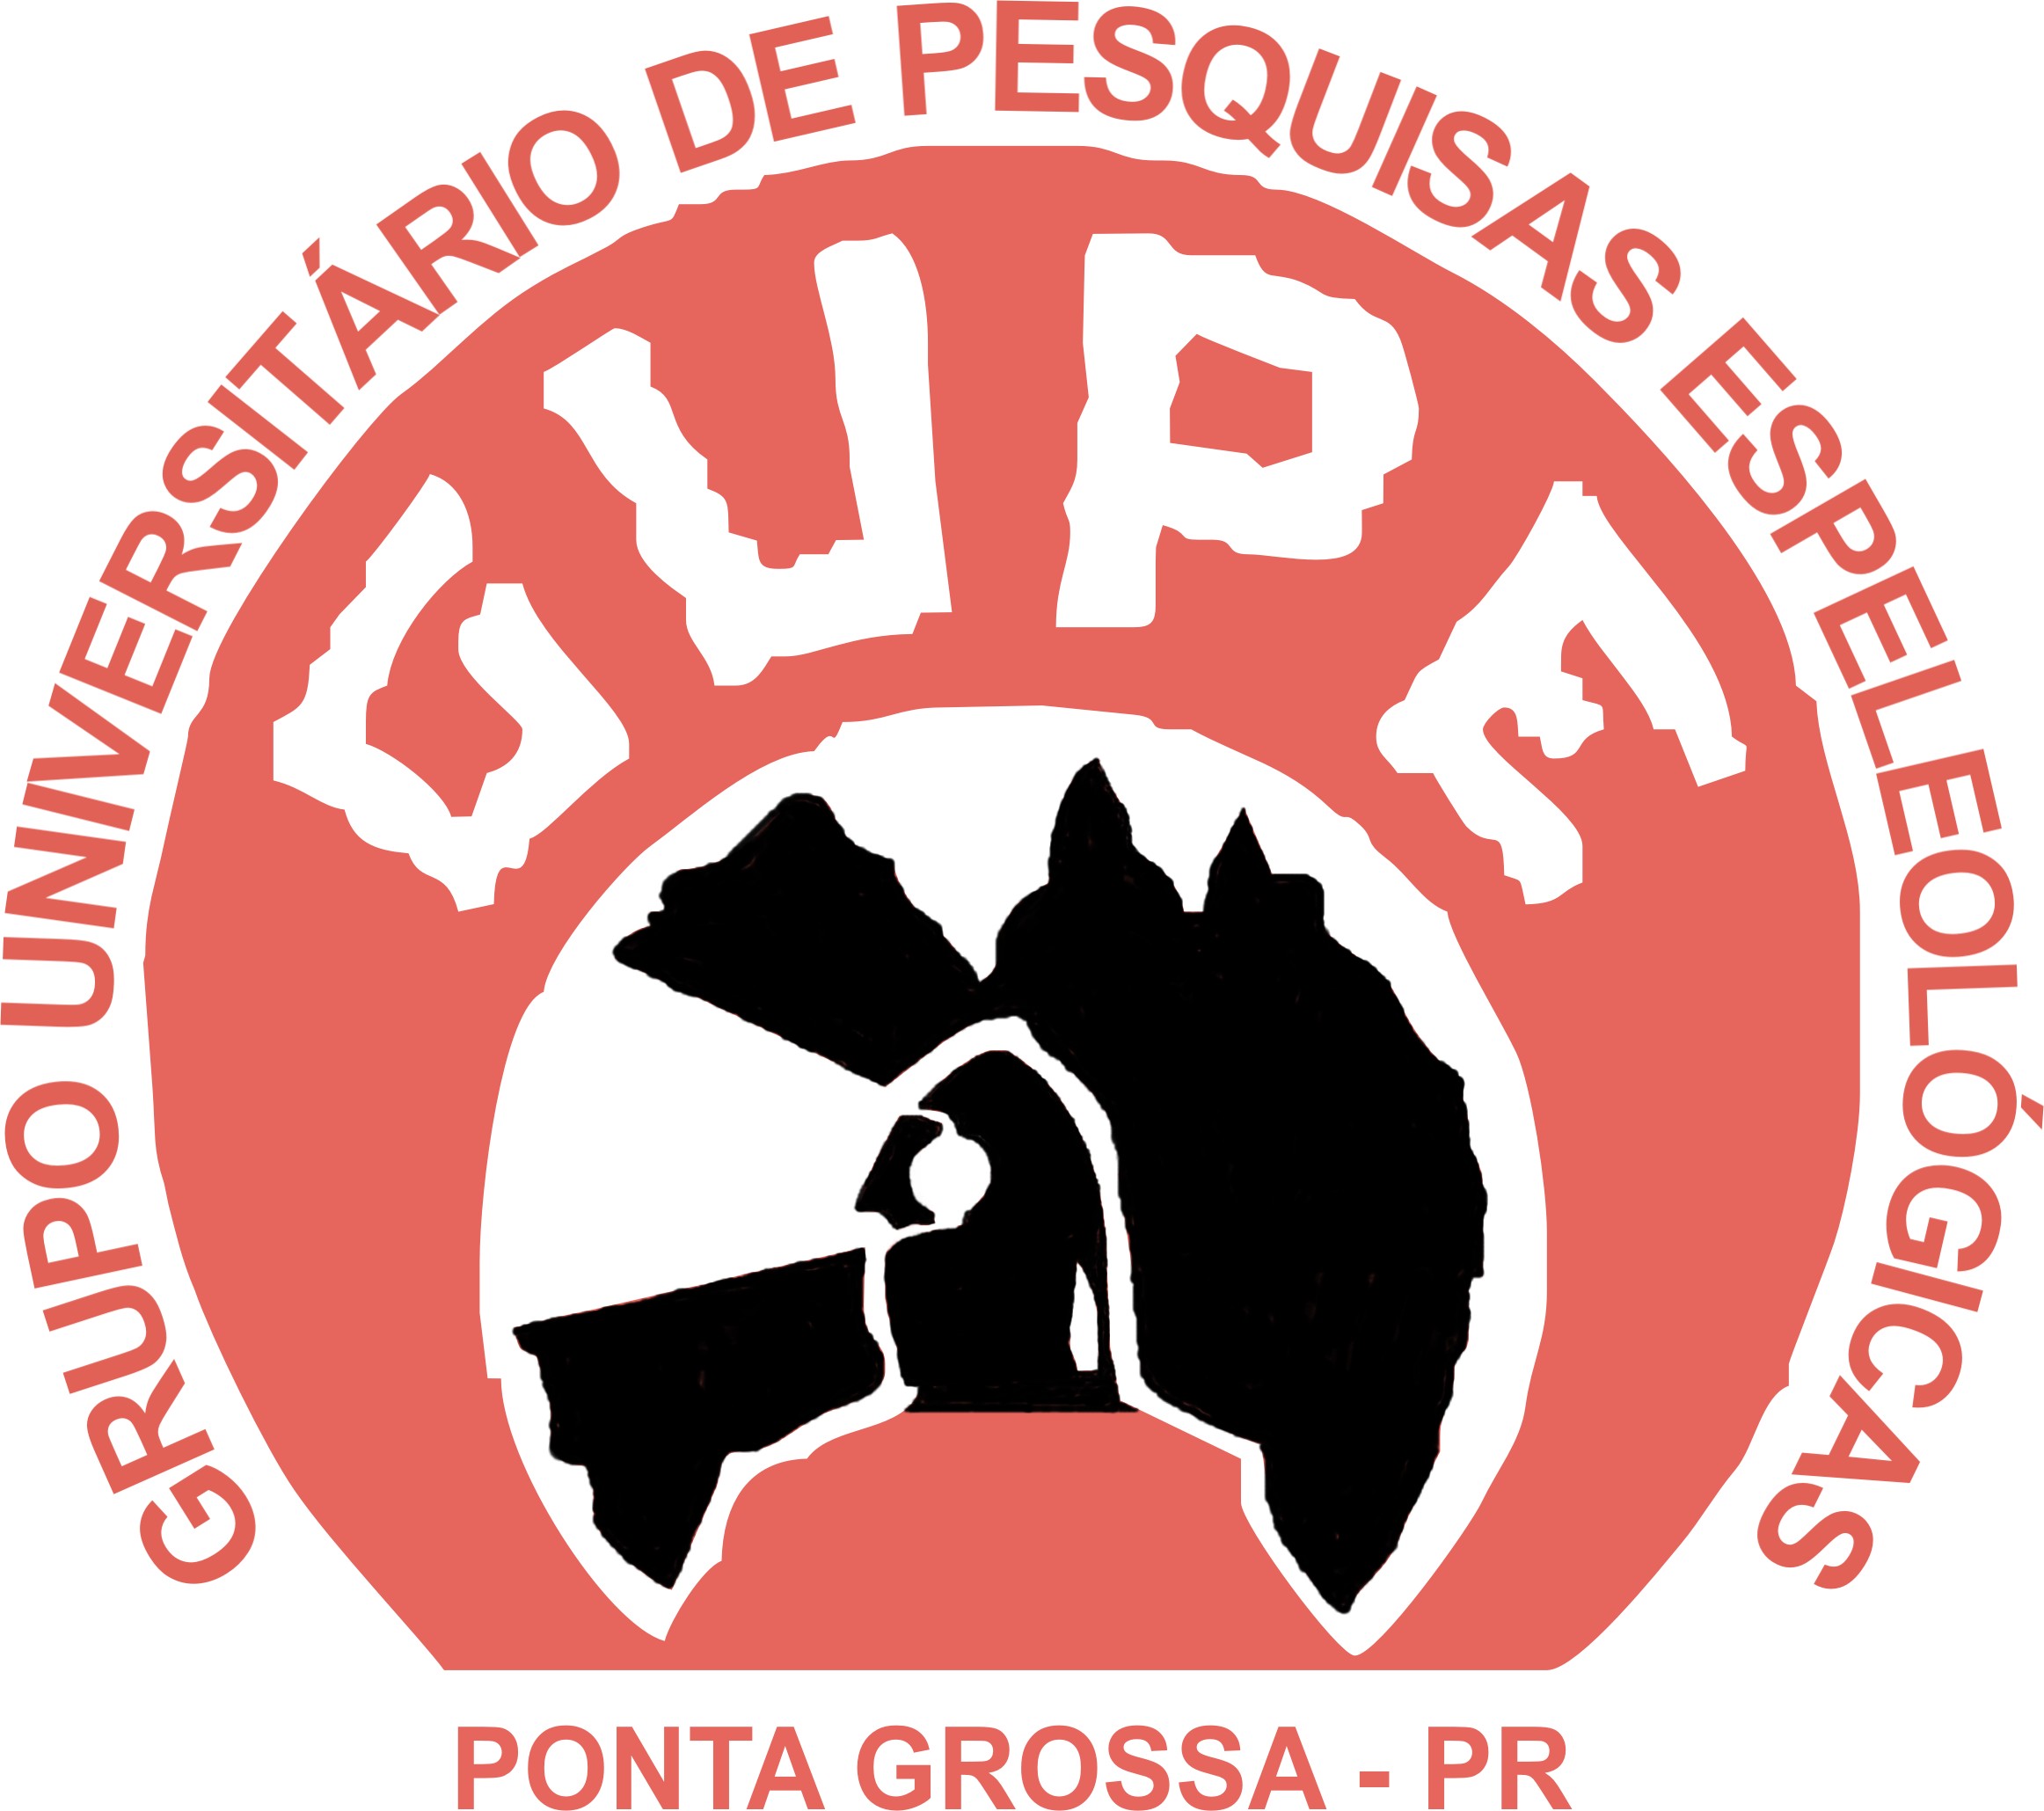 Documento de Licenciamento – Sociedade Brasileira de Espeleologia